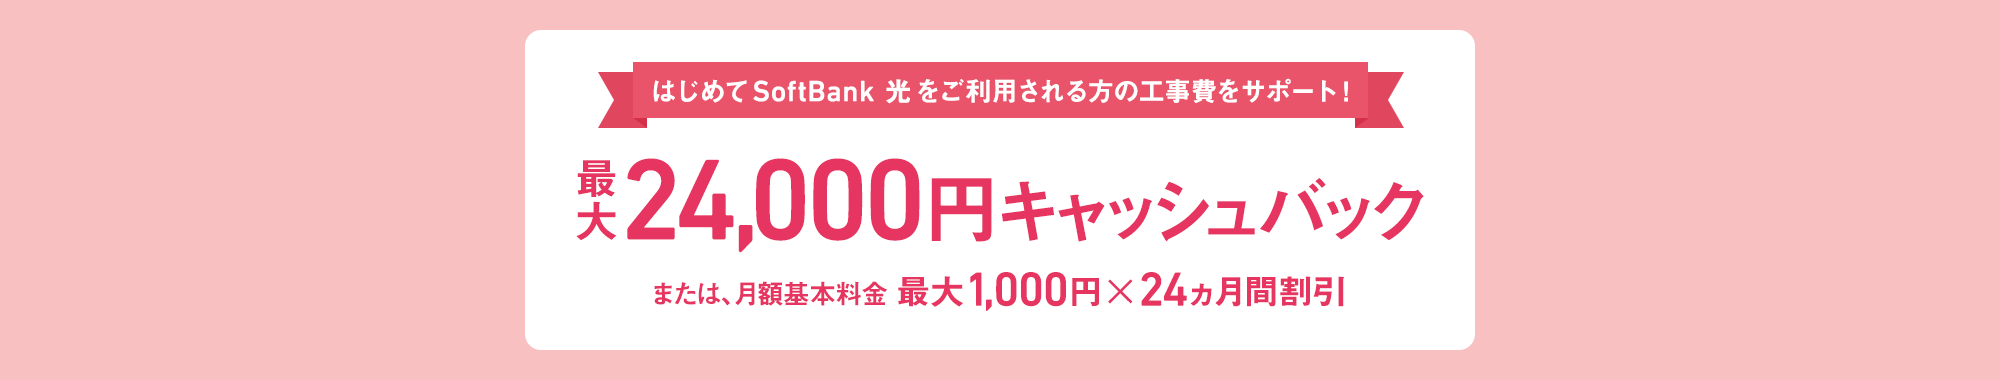 はじめて SoftBank 光をご利用される方の工事費をサポート！ 最大24,000円キャッシュバック または、月額基本料金 最大1,000円×24ヵ月間割引